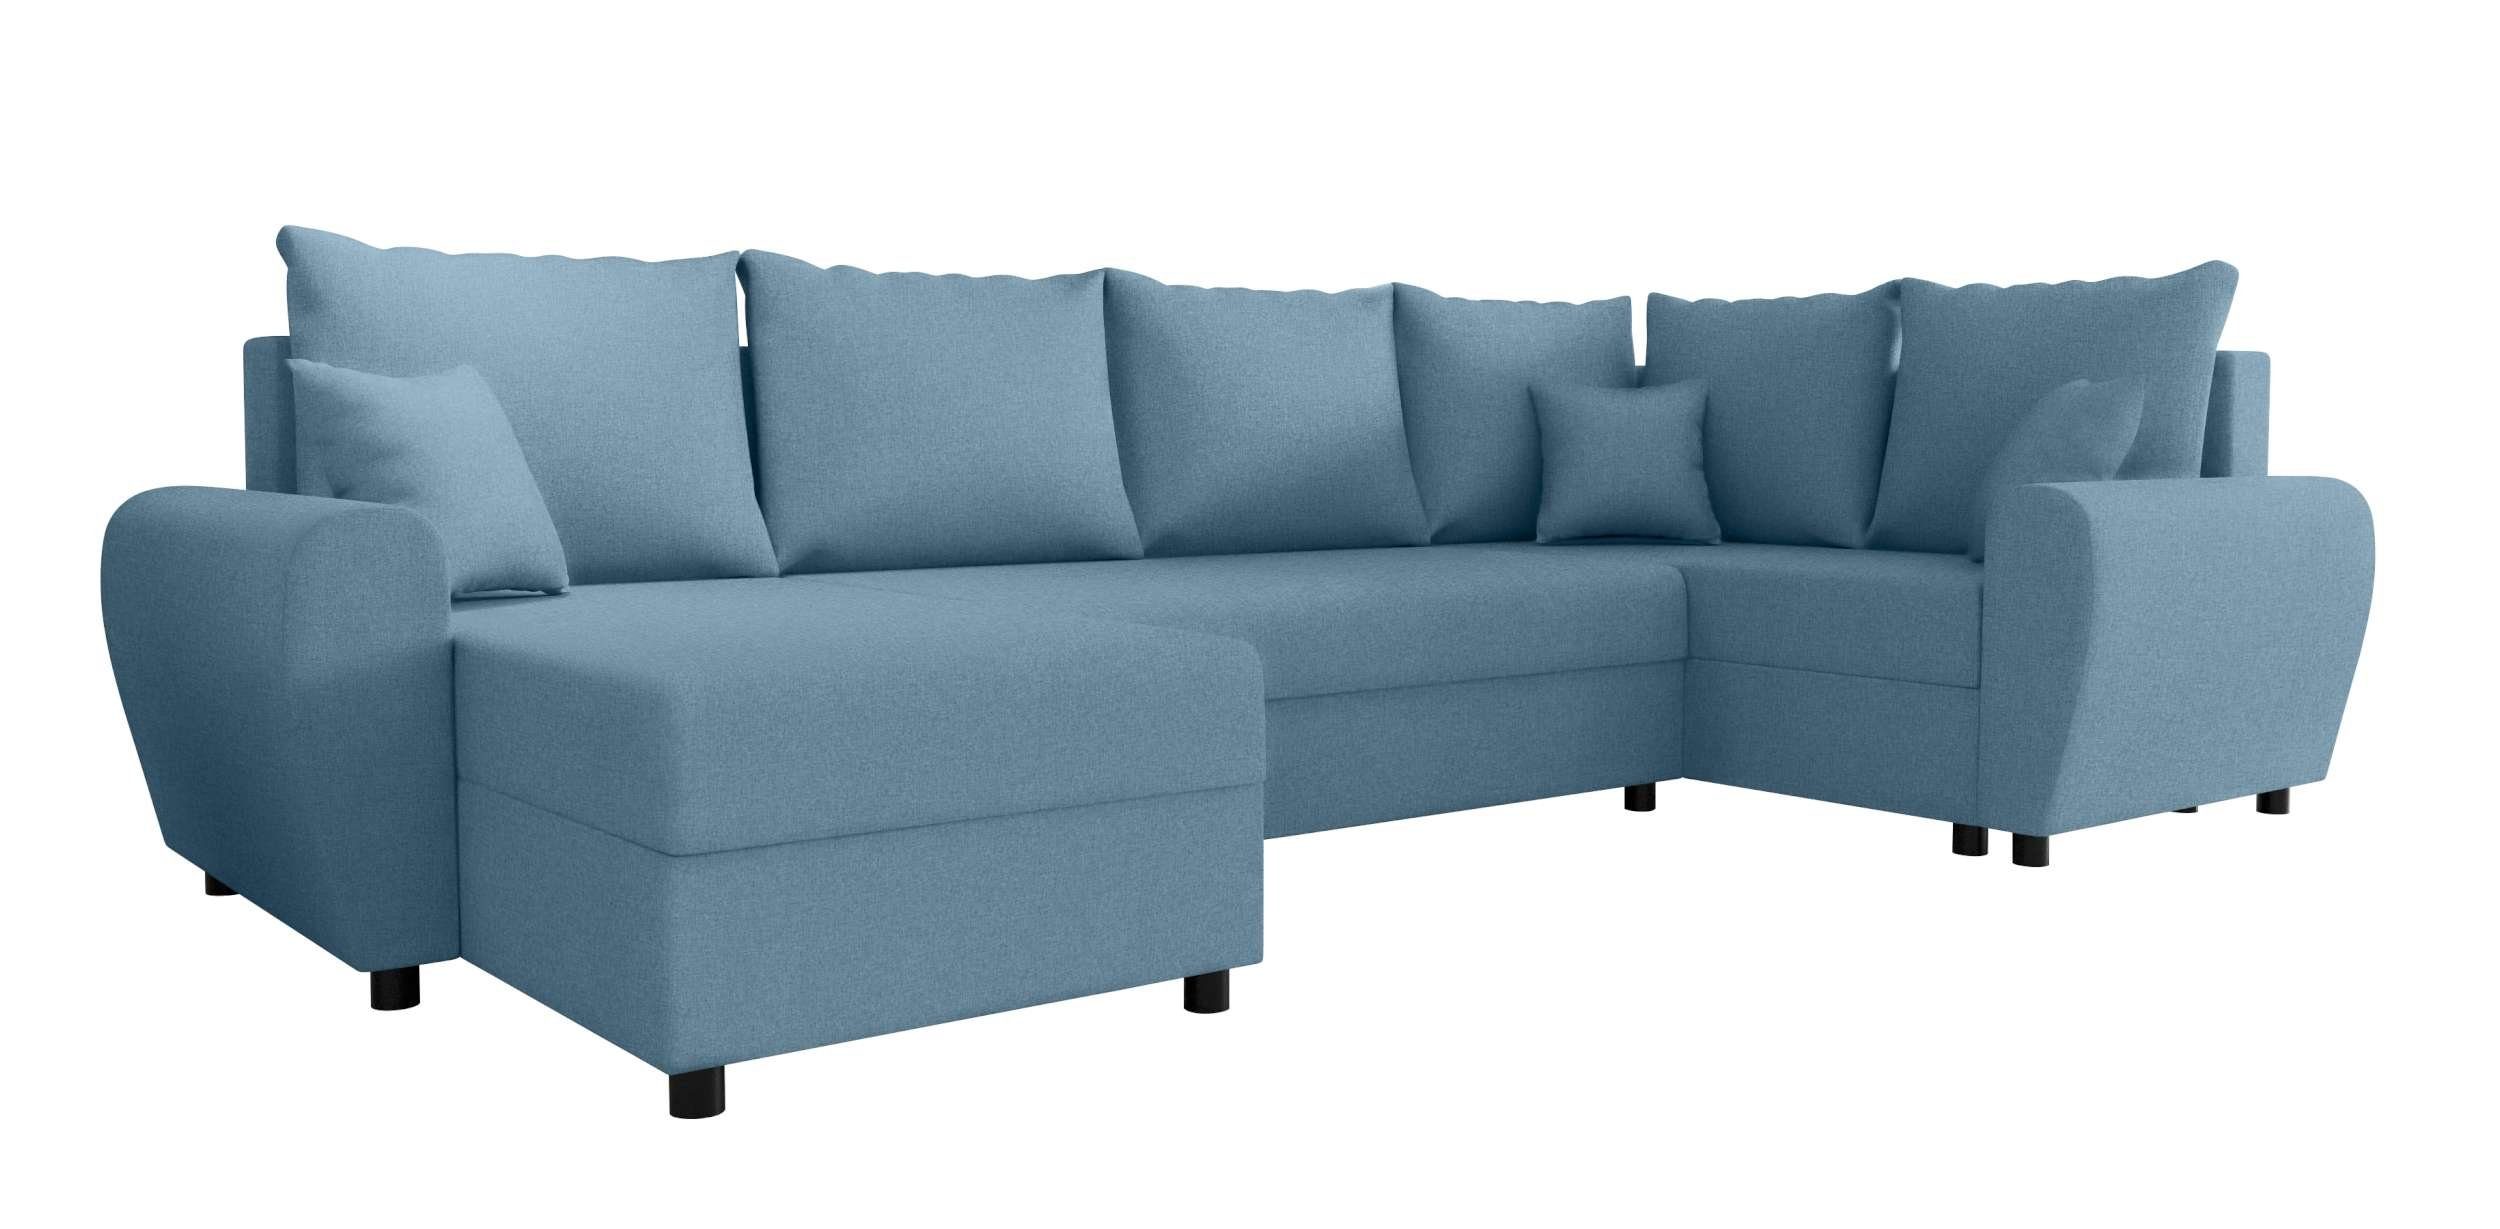 mit Sofa, Haven, U-Form, Design Modern mit Bettkasten, Bettfunktion, Wohnlandschaft Stylefy Sitzkomfort, Eckcouch,